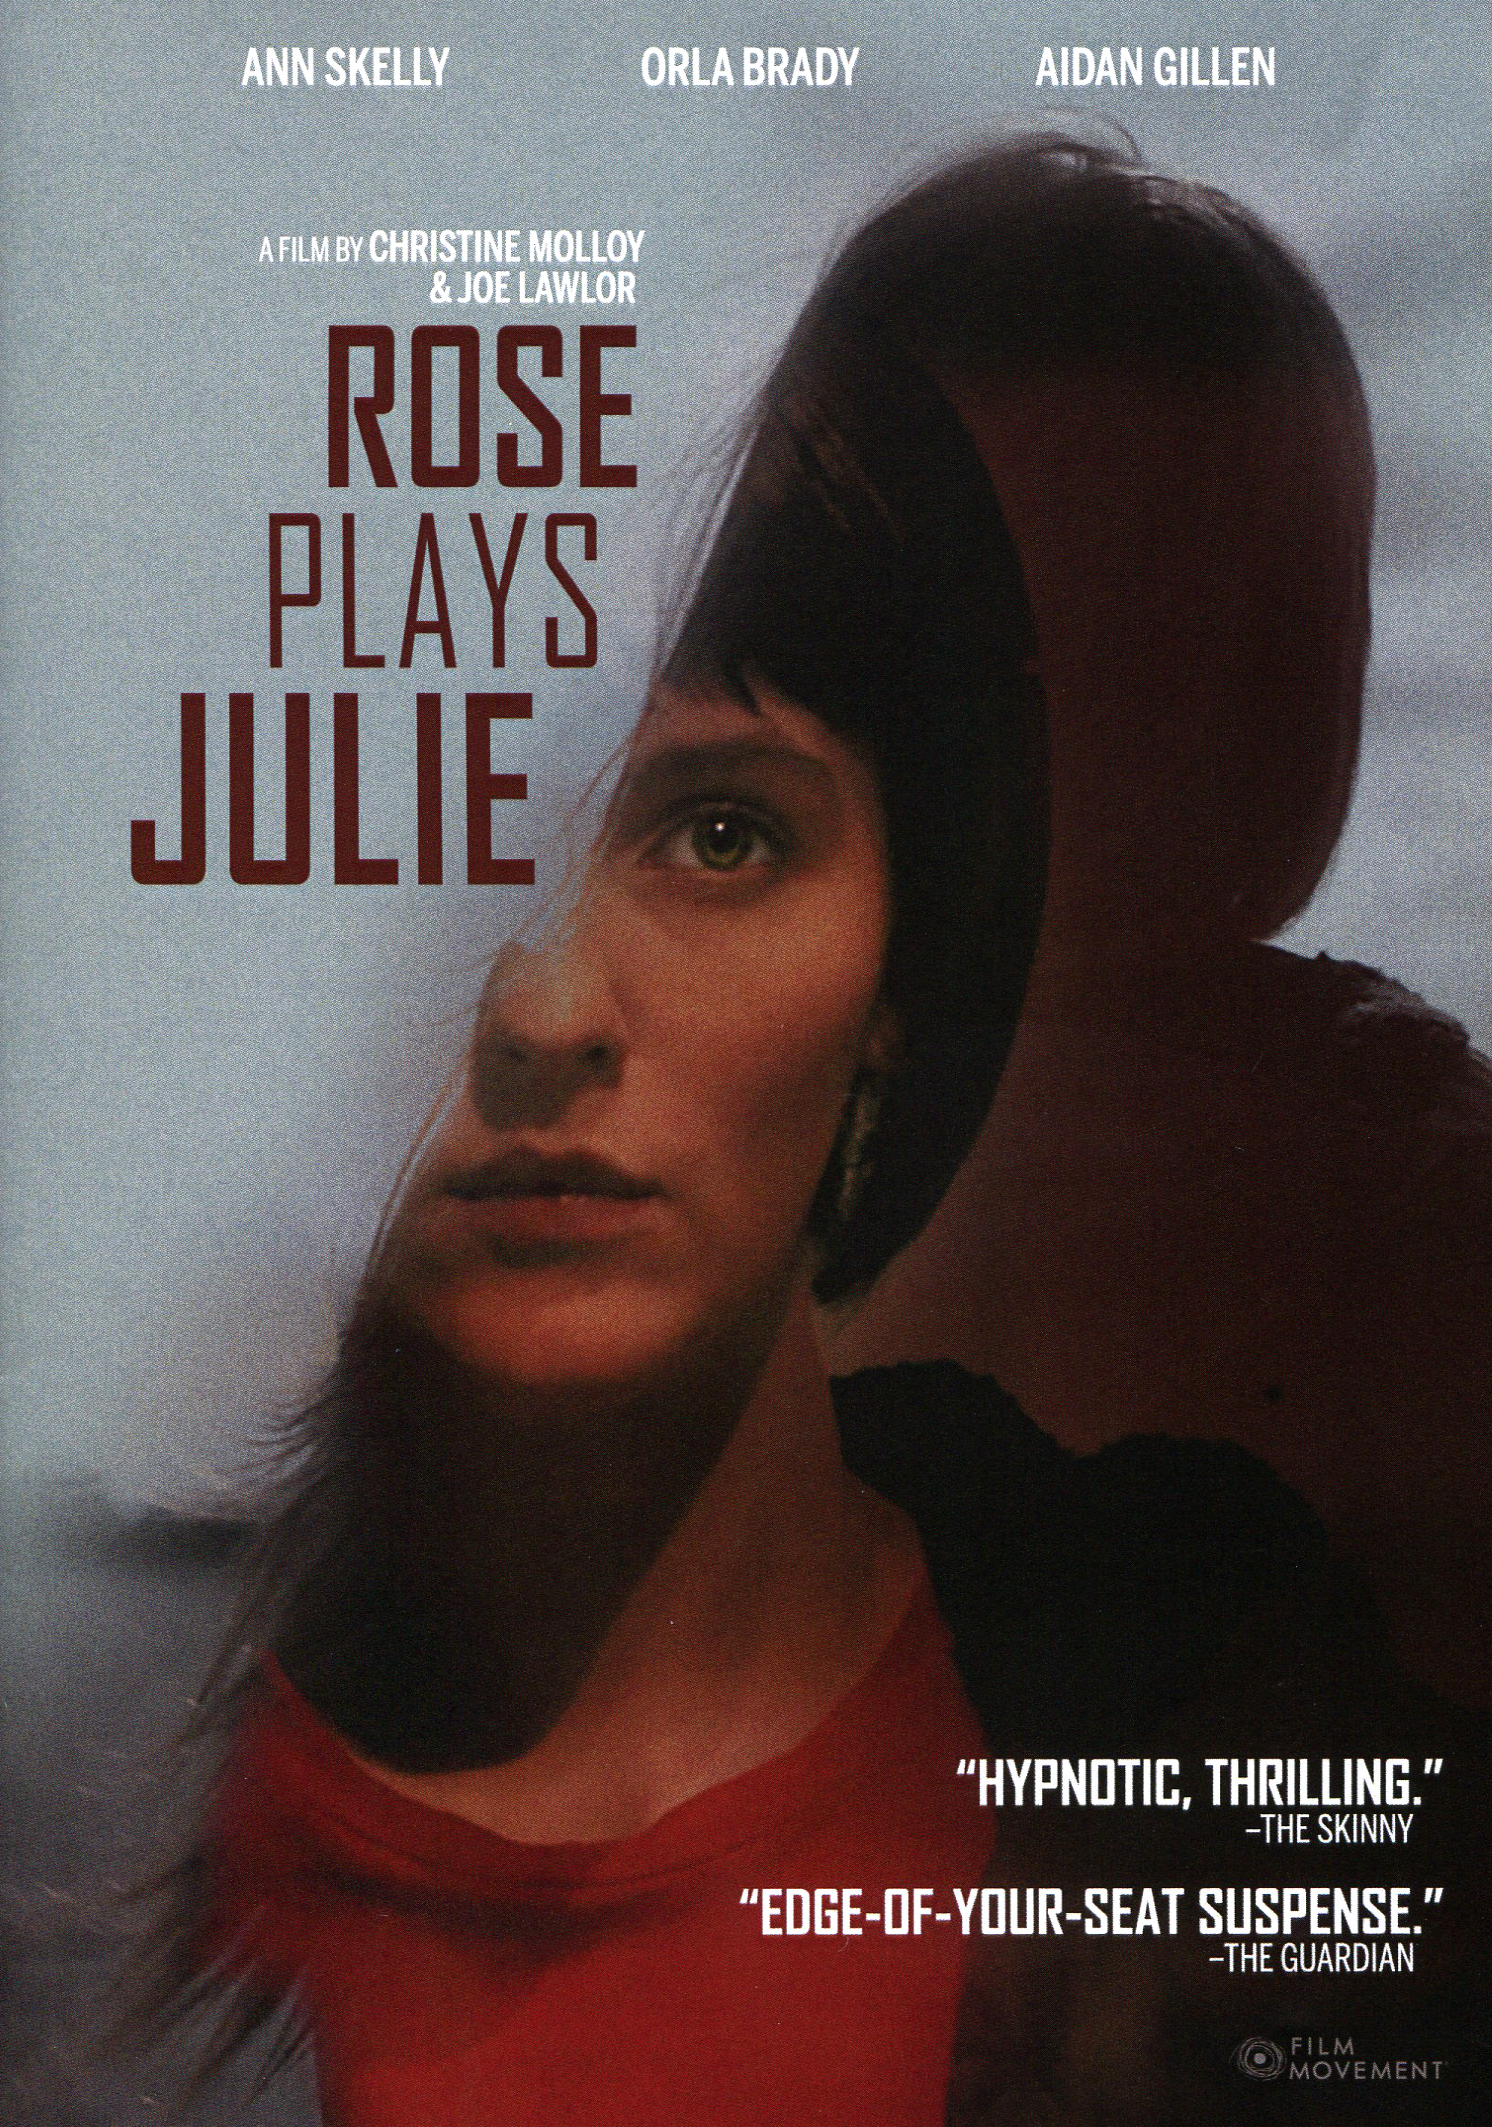 Rose plays julie 2019 full movie